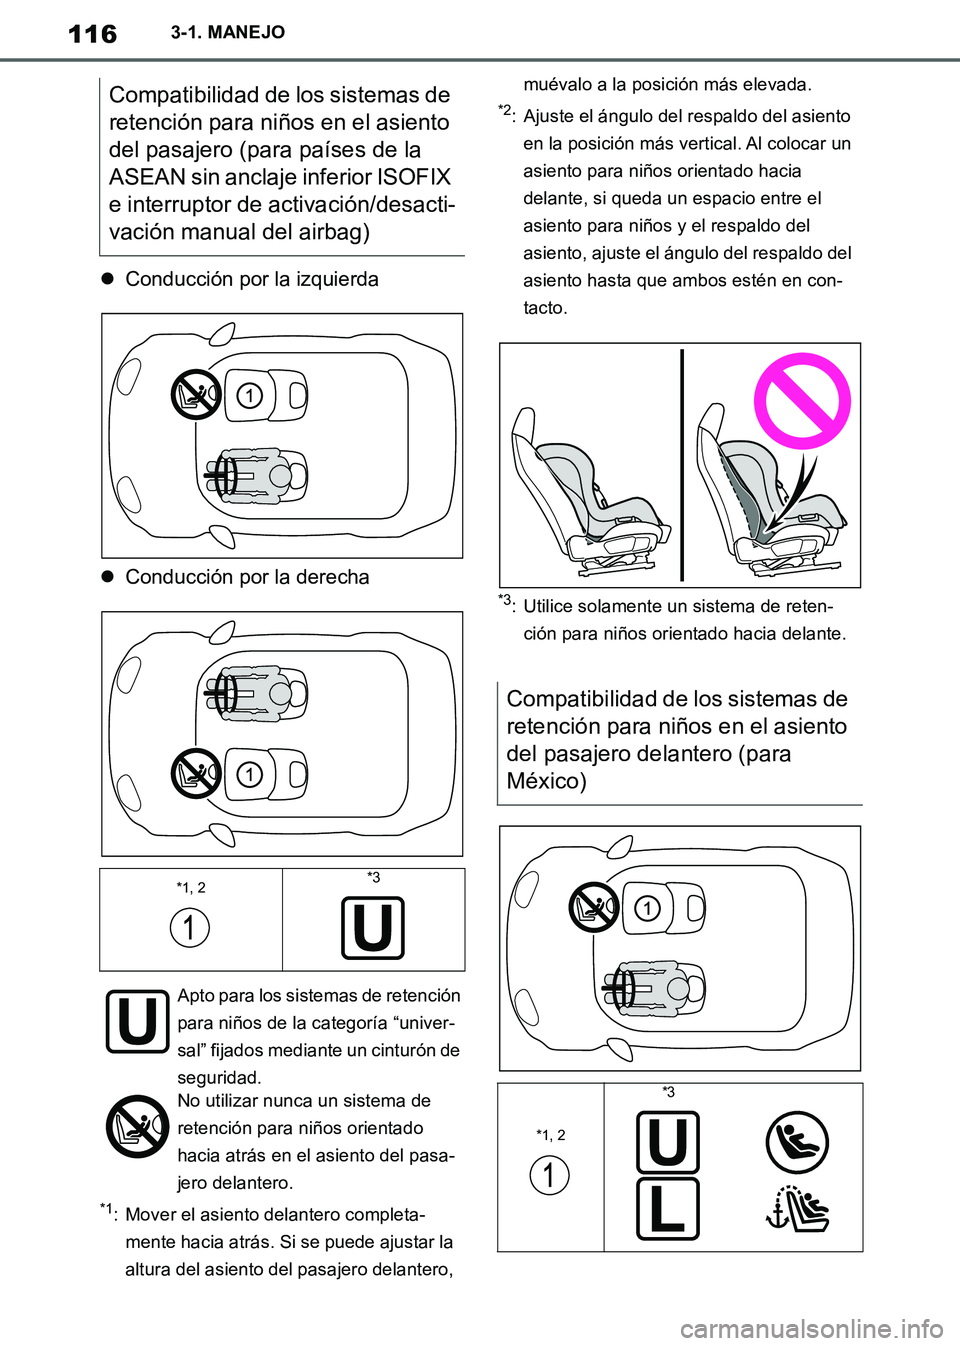 TOYOTA SUPRA 2019  Manuale de Empleo (in Spanish) 116
Supra Owners Manual_ES
3-1. MANEJO
Conducción por la izquierda
Conducción por la derecha
*1: Mover el asiento delantero completa-
mente hacia atrás. Si se puede ajustar la 
altura del as